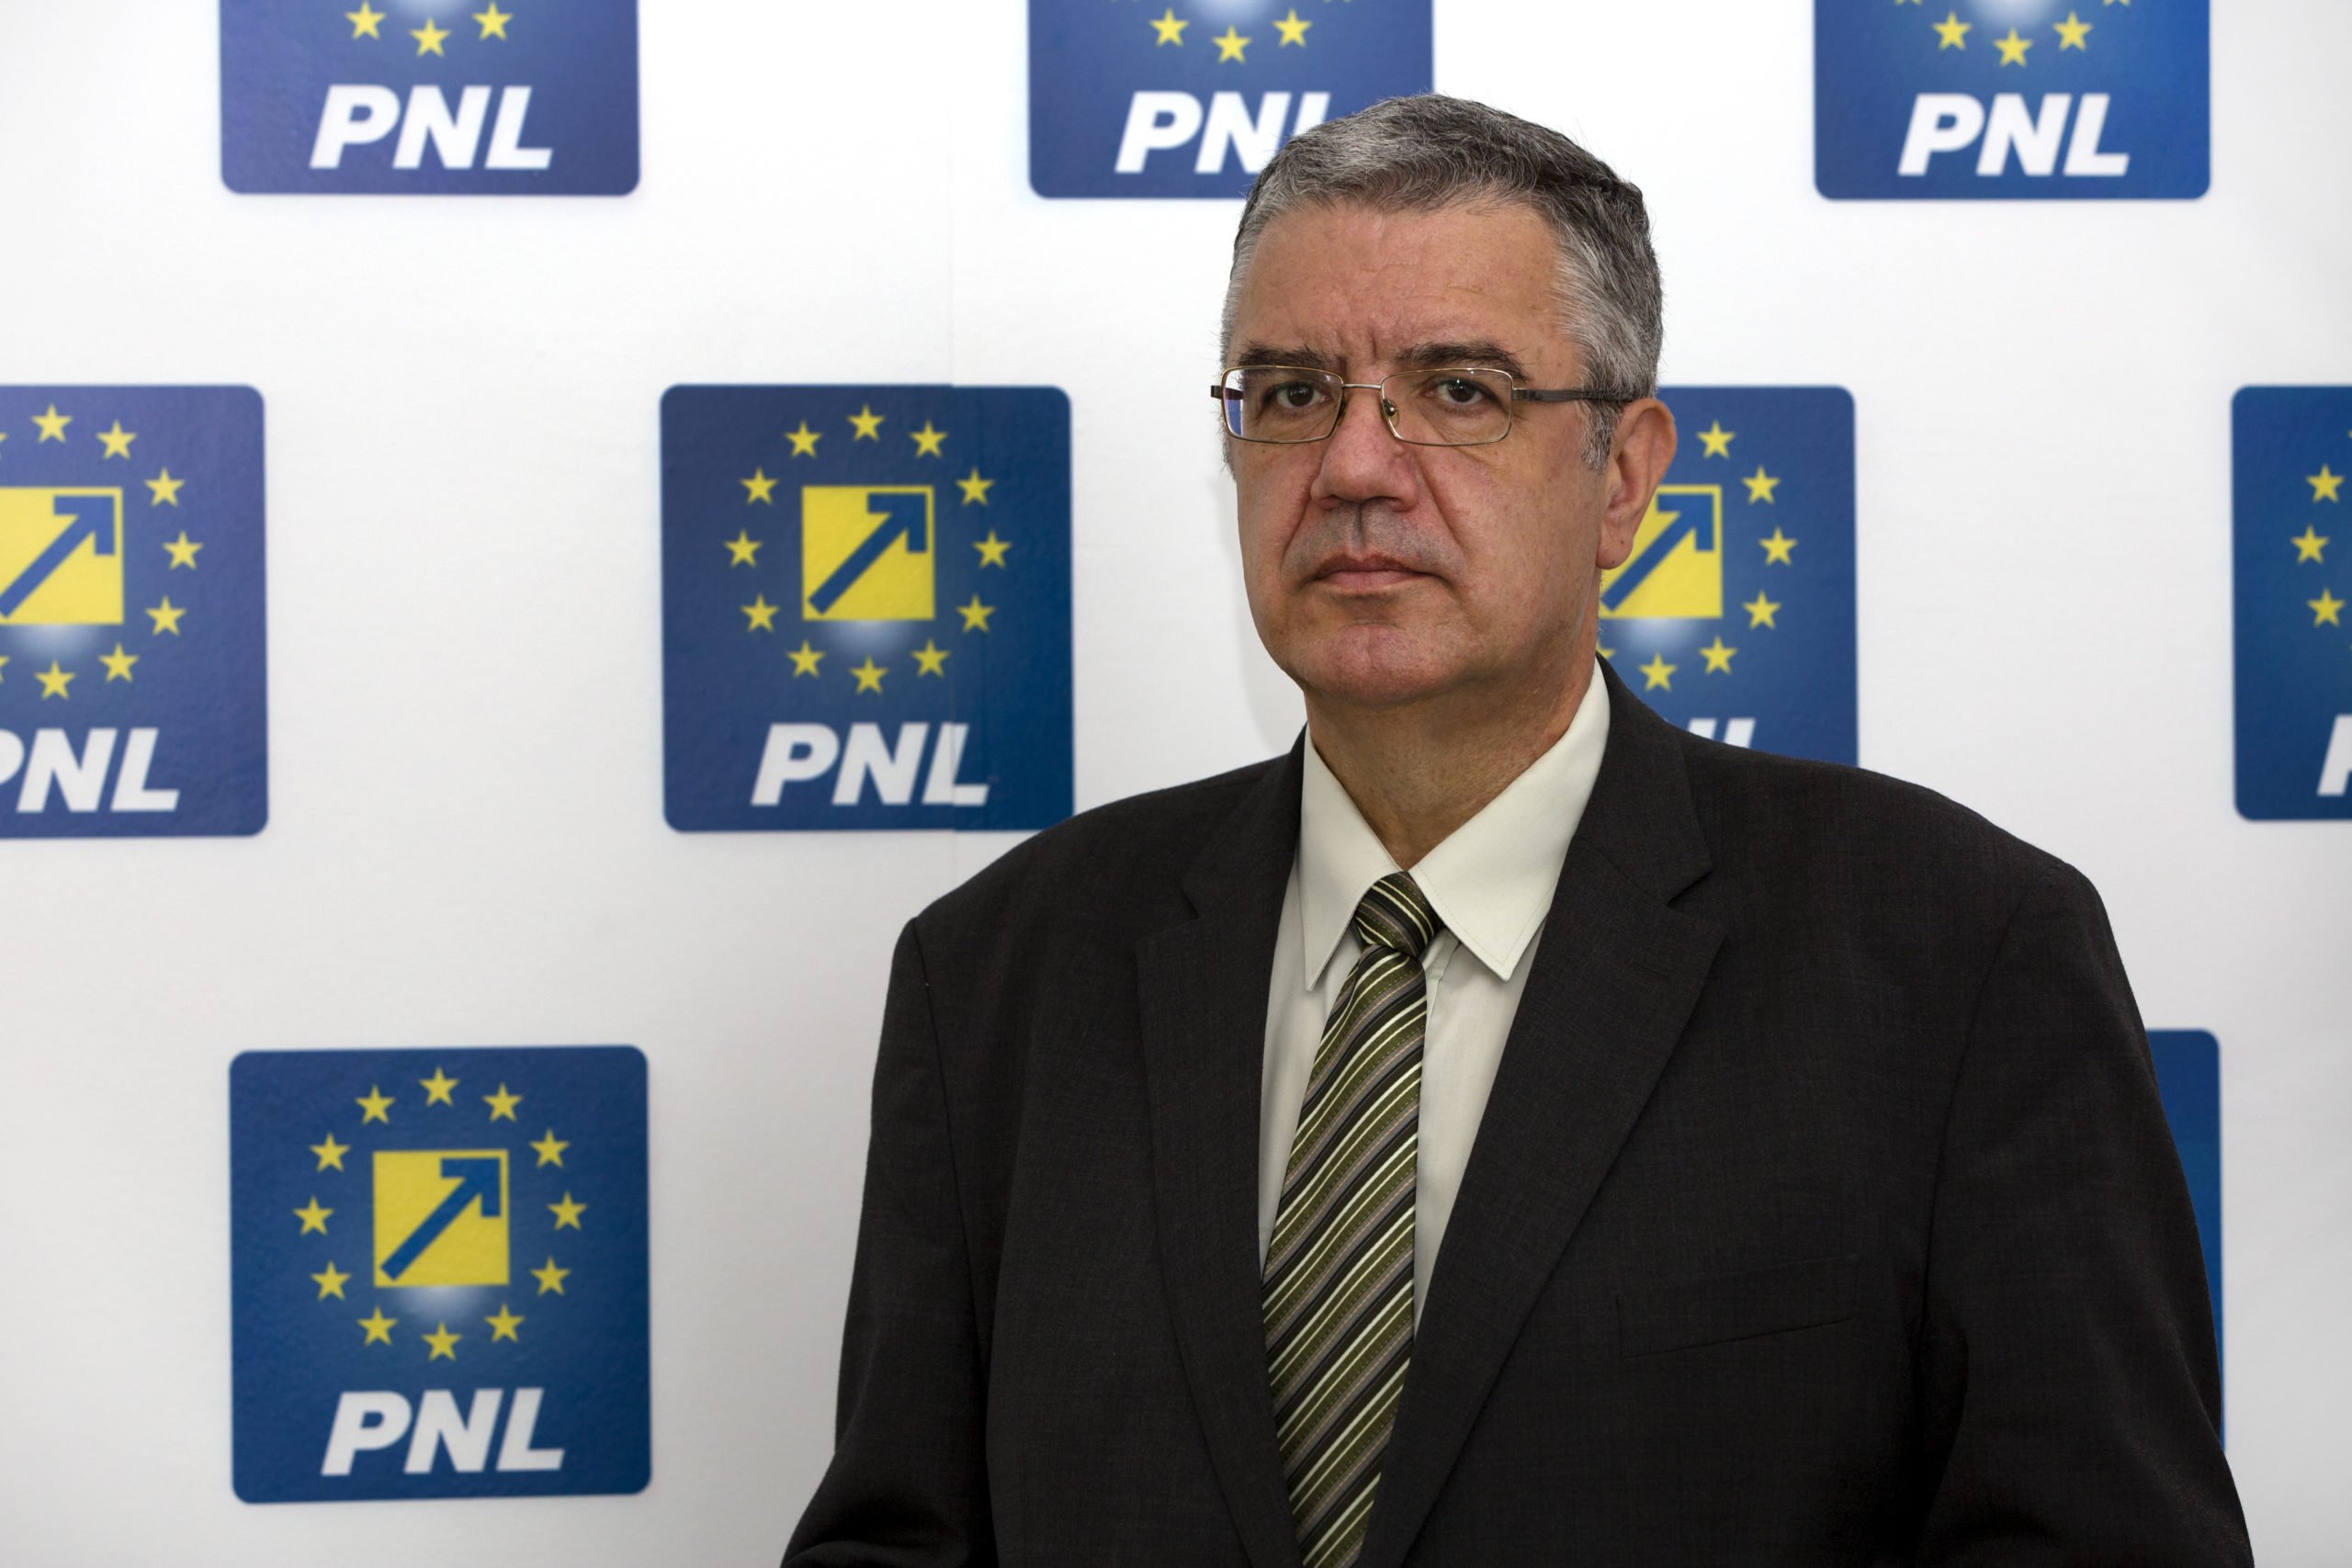  Încă un deputat, Nicolae Giugea, îşi anunţă retragerea din Grupul parlamentar PNL